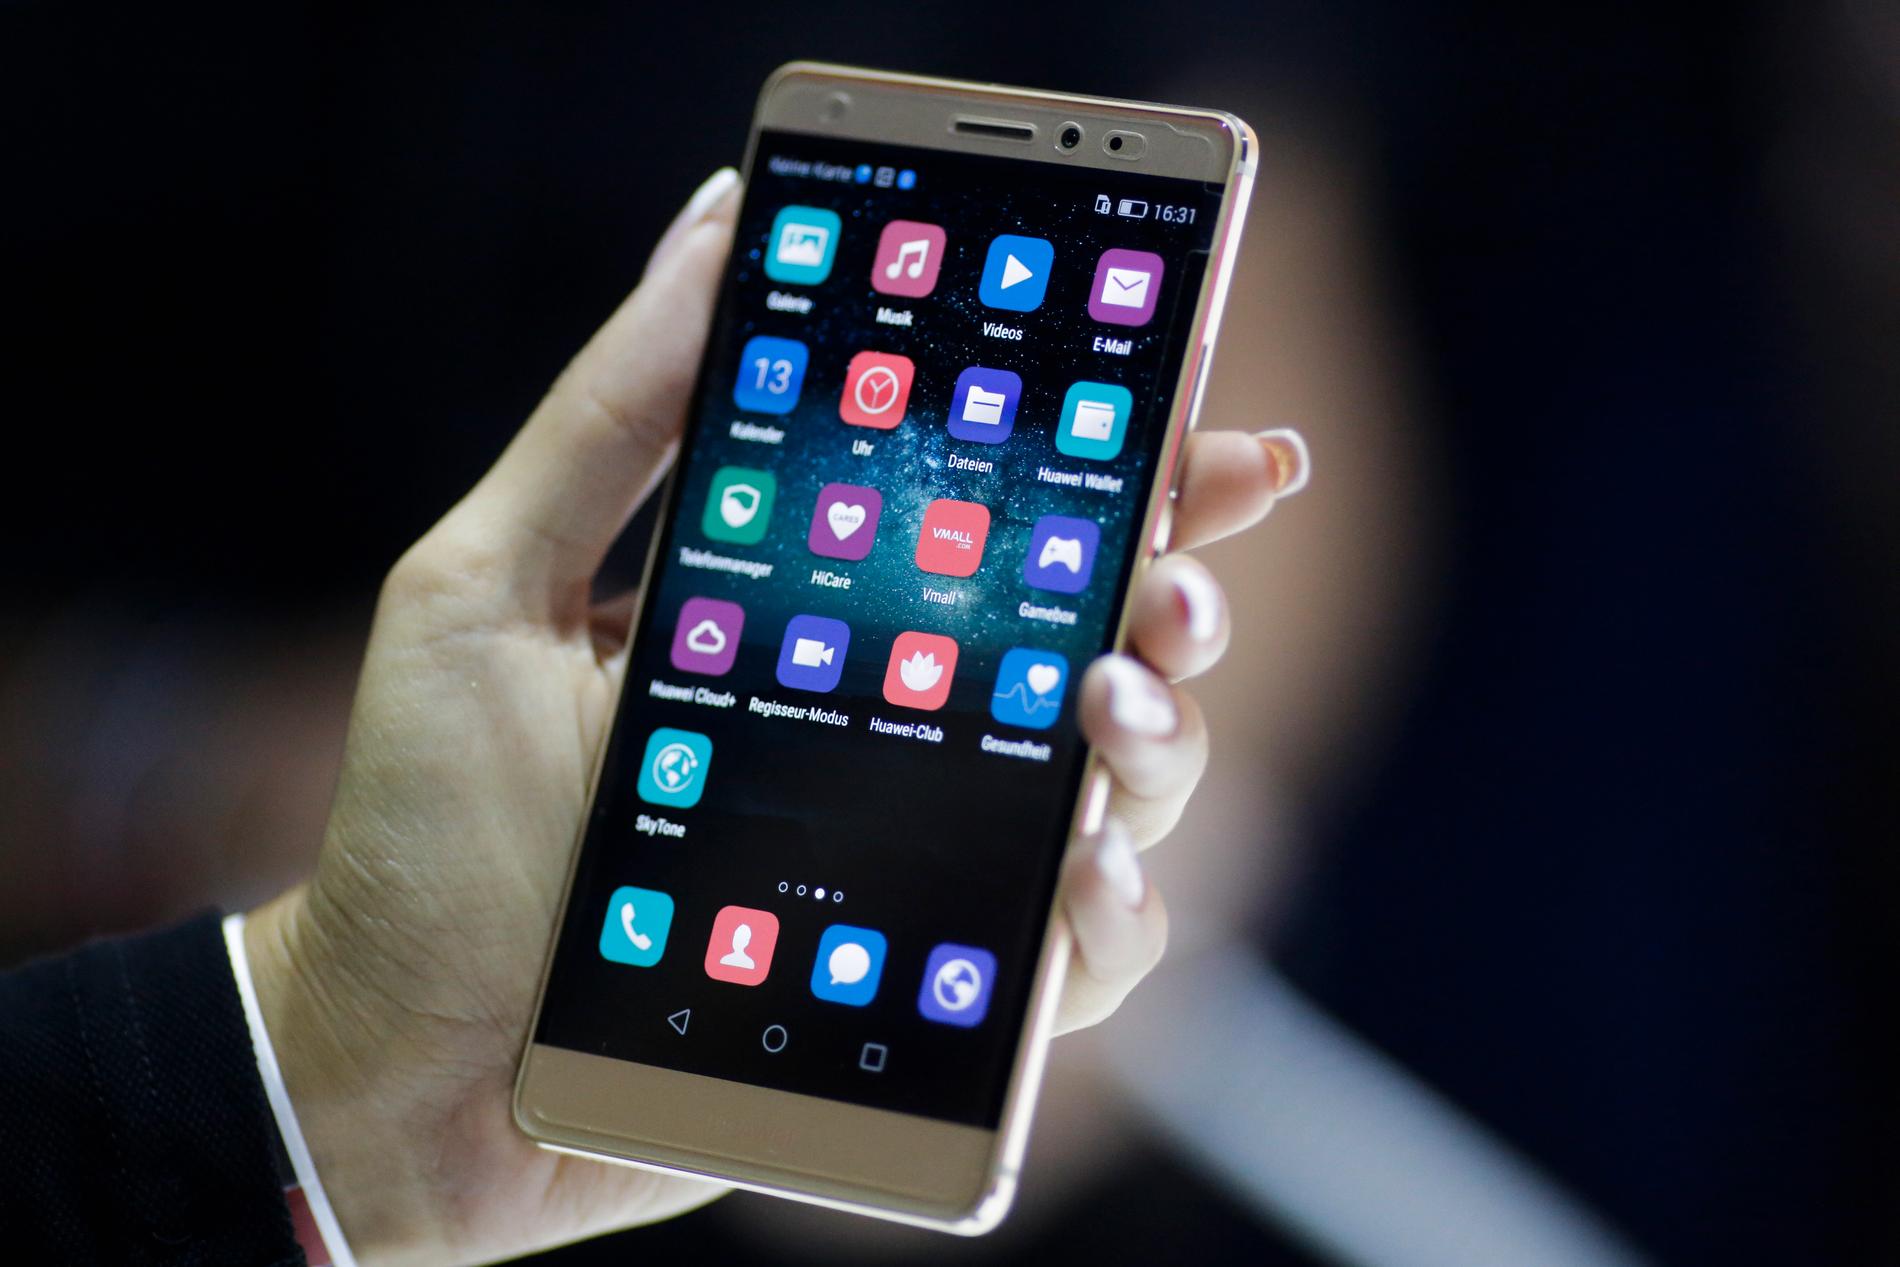 Huawei mobiltelefoner pekas ut som en säkerhetsrisk av USA:s säkerhetstjänster.